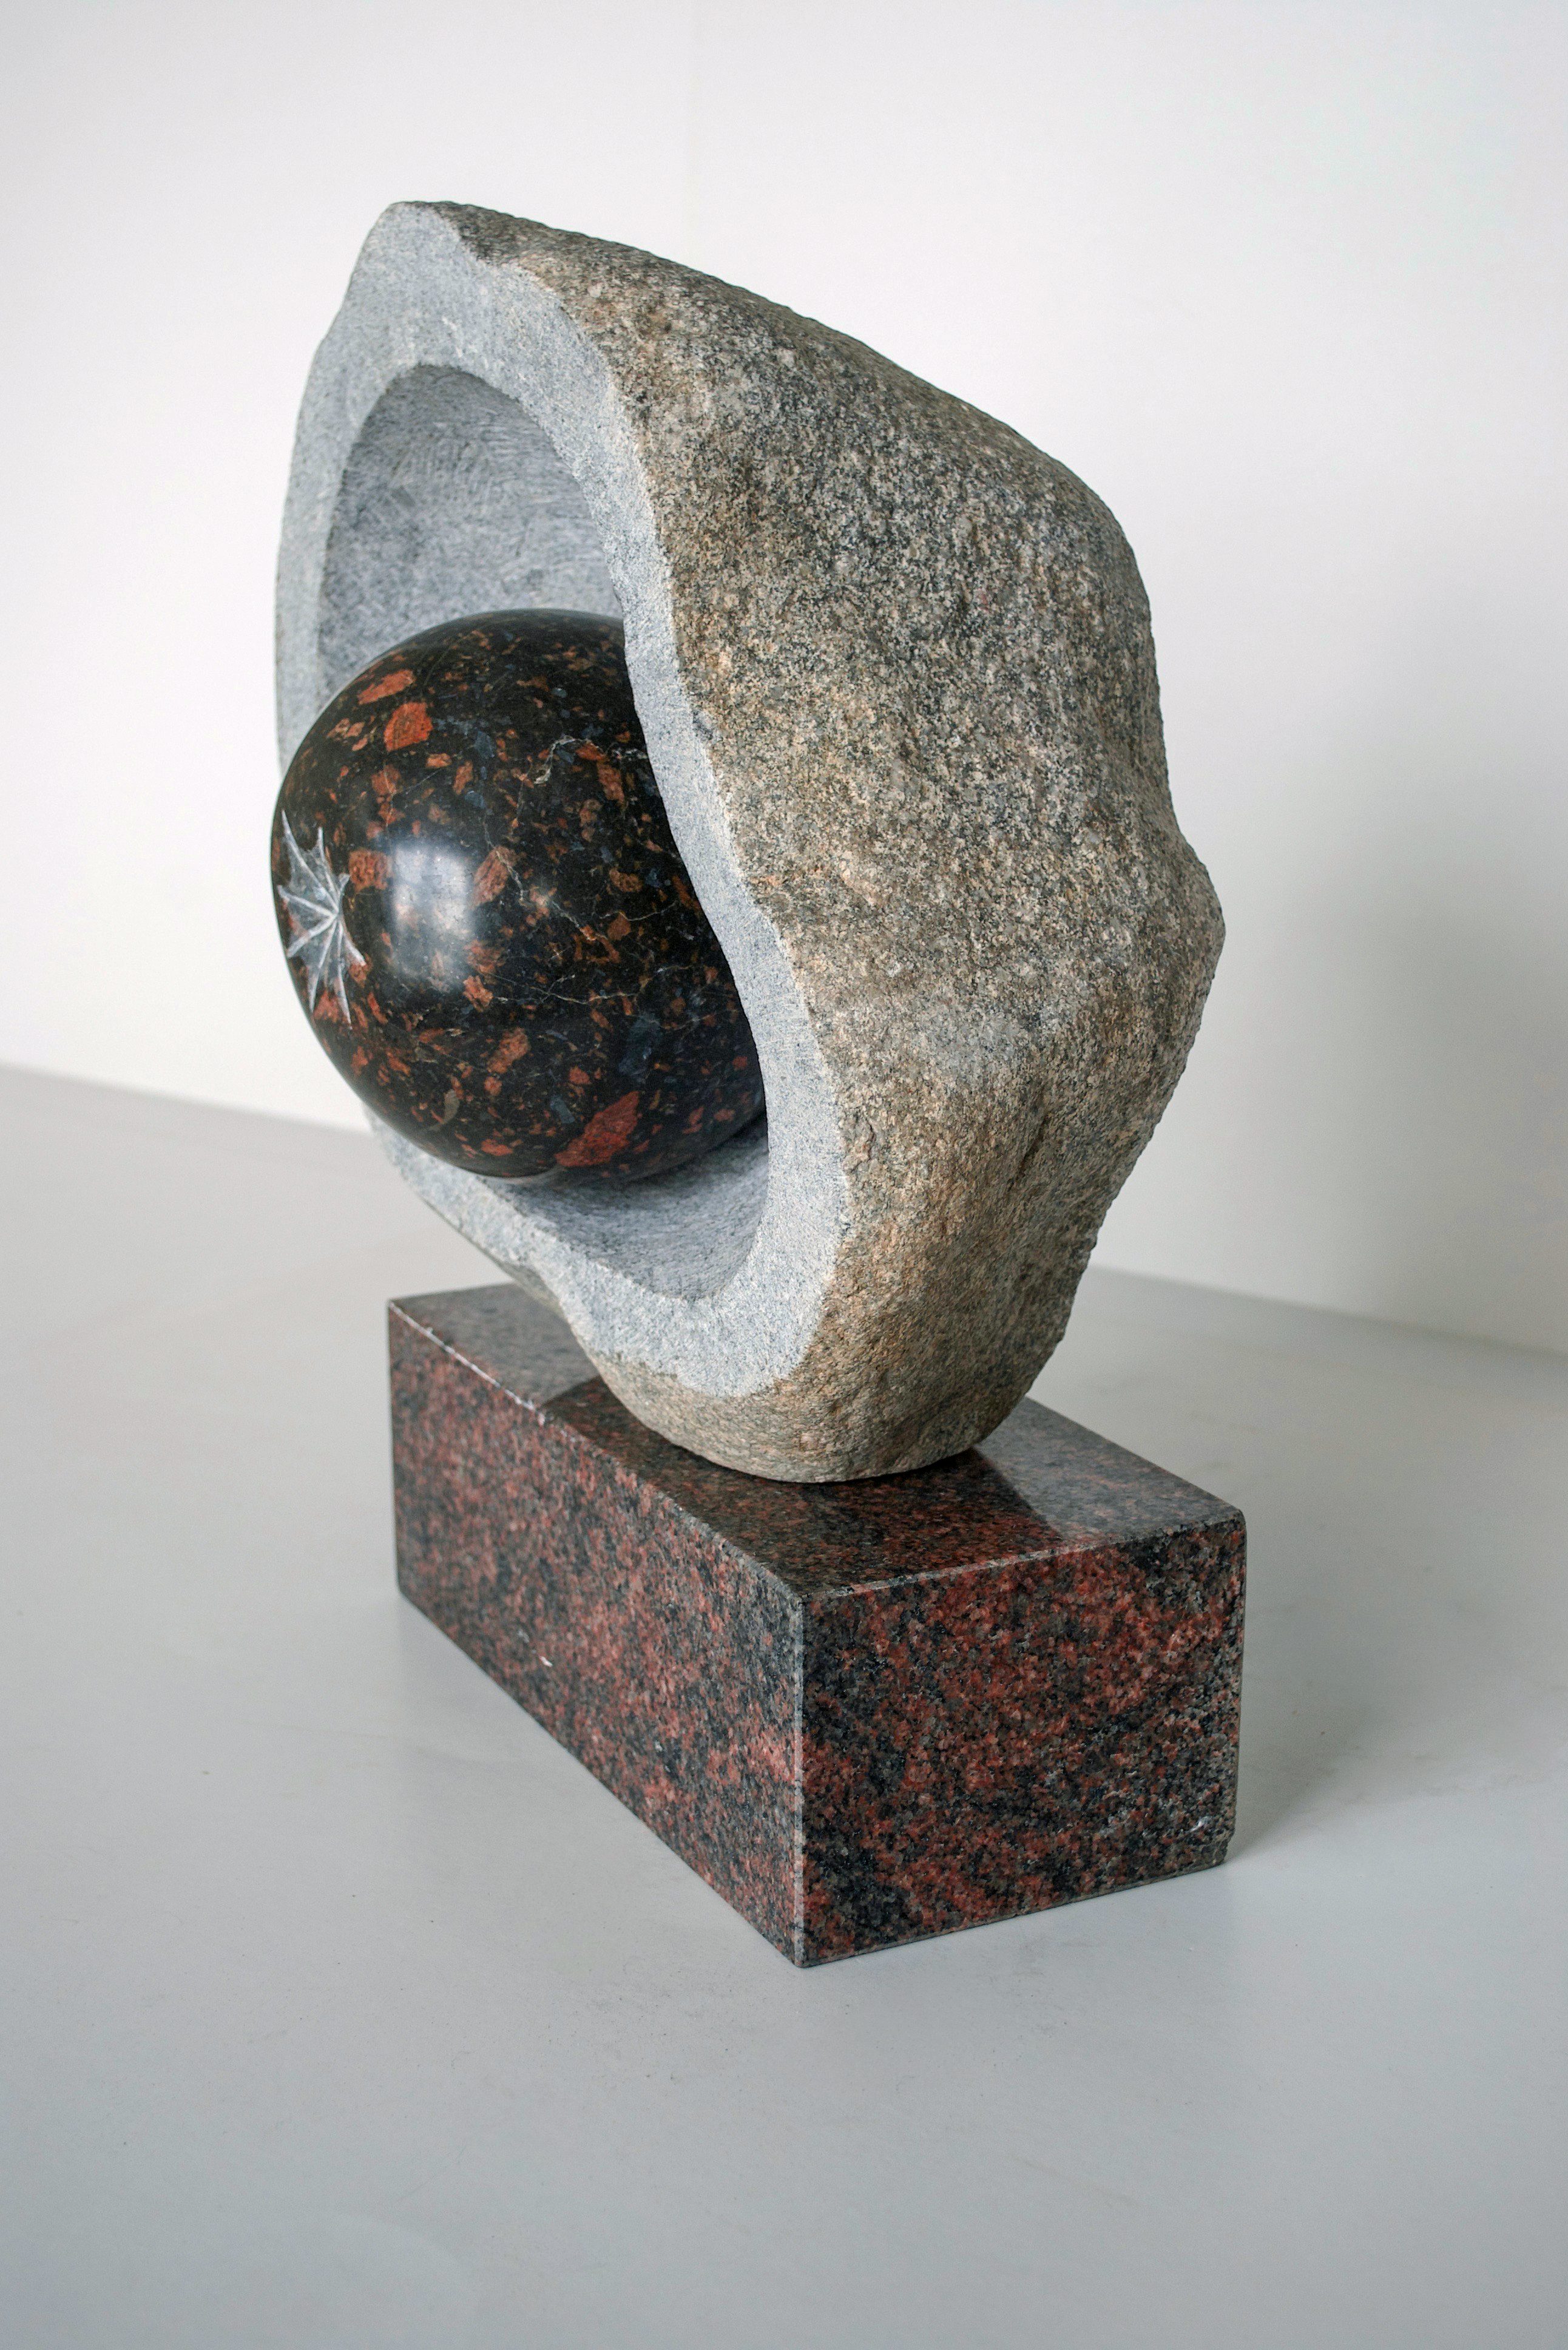 skulptūra iš šviesaus akmens ir dviejų tamsaus akmens detalių (priekis)/ sculpture made of one piece light stone and two pieces dark stone (front)